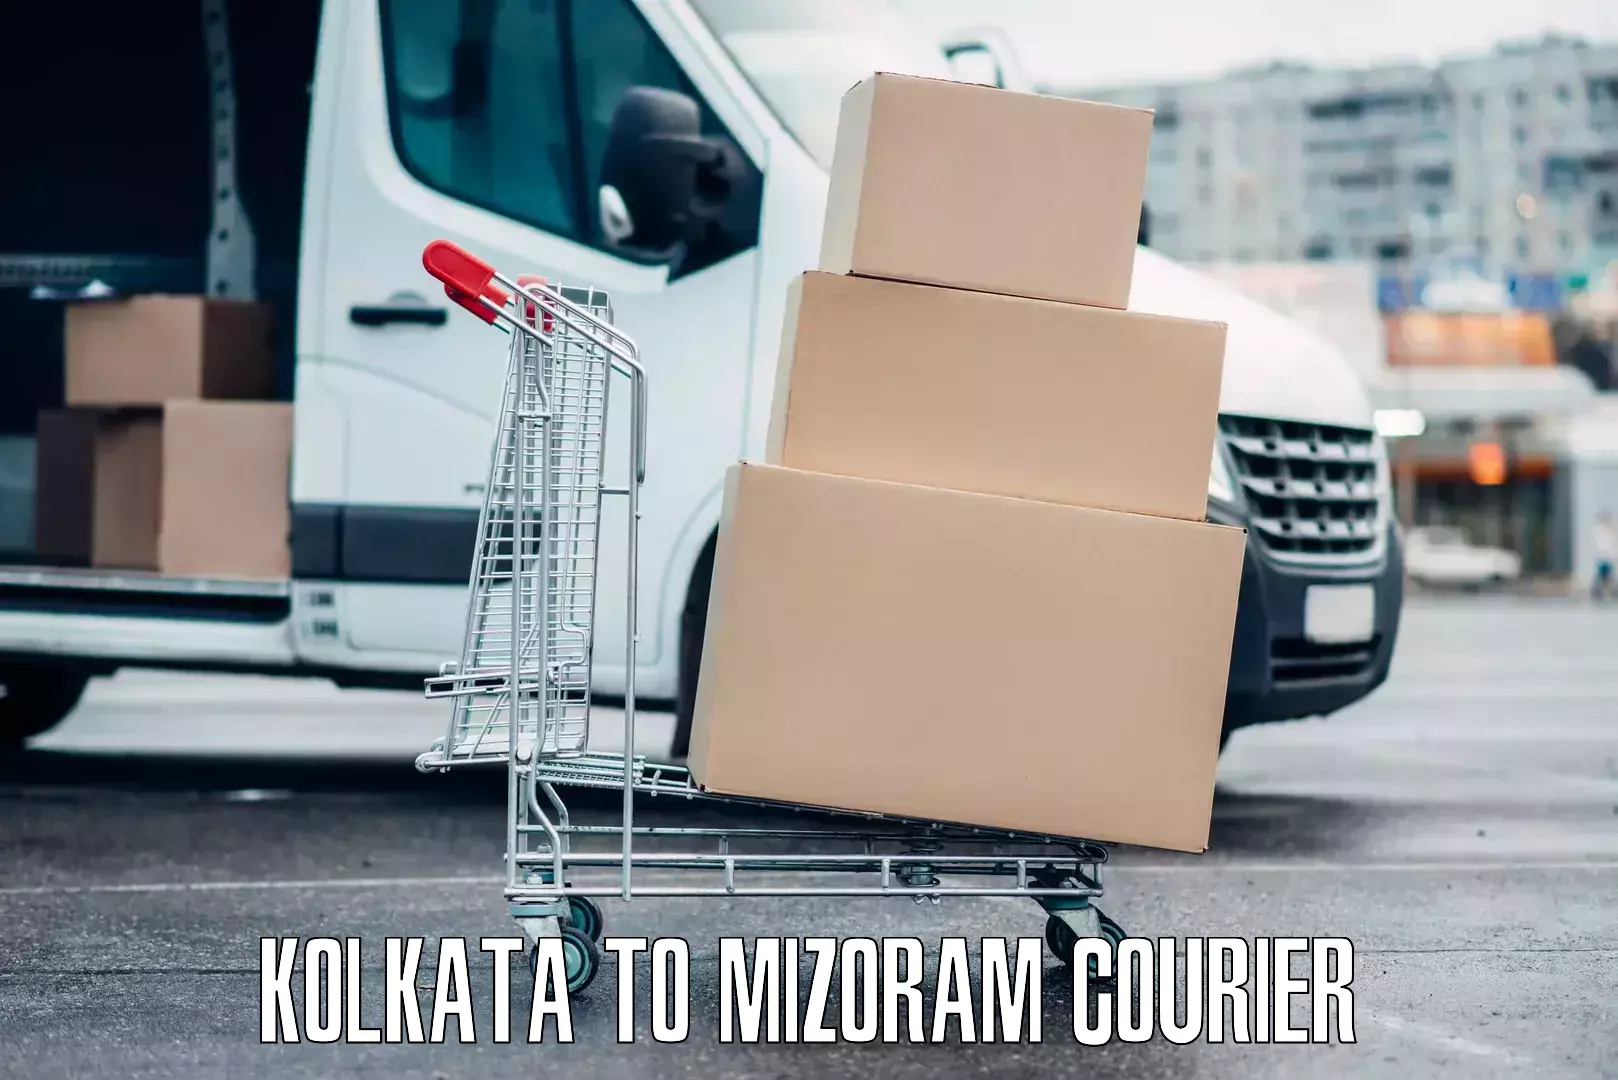 Automated luggage transport Kolkata to Mizoram